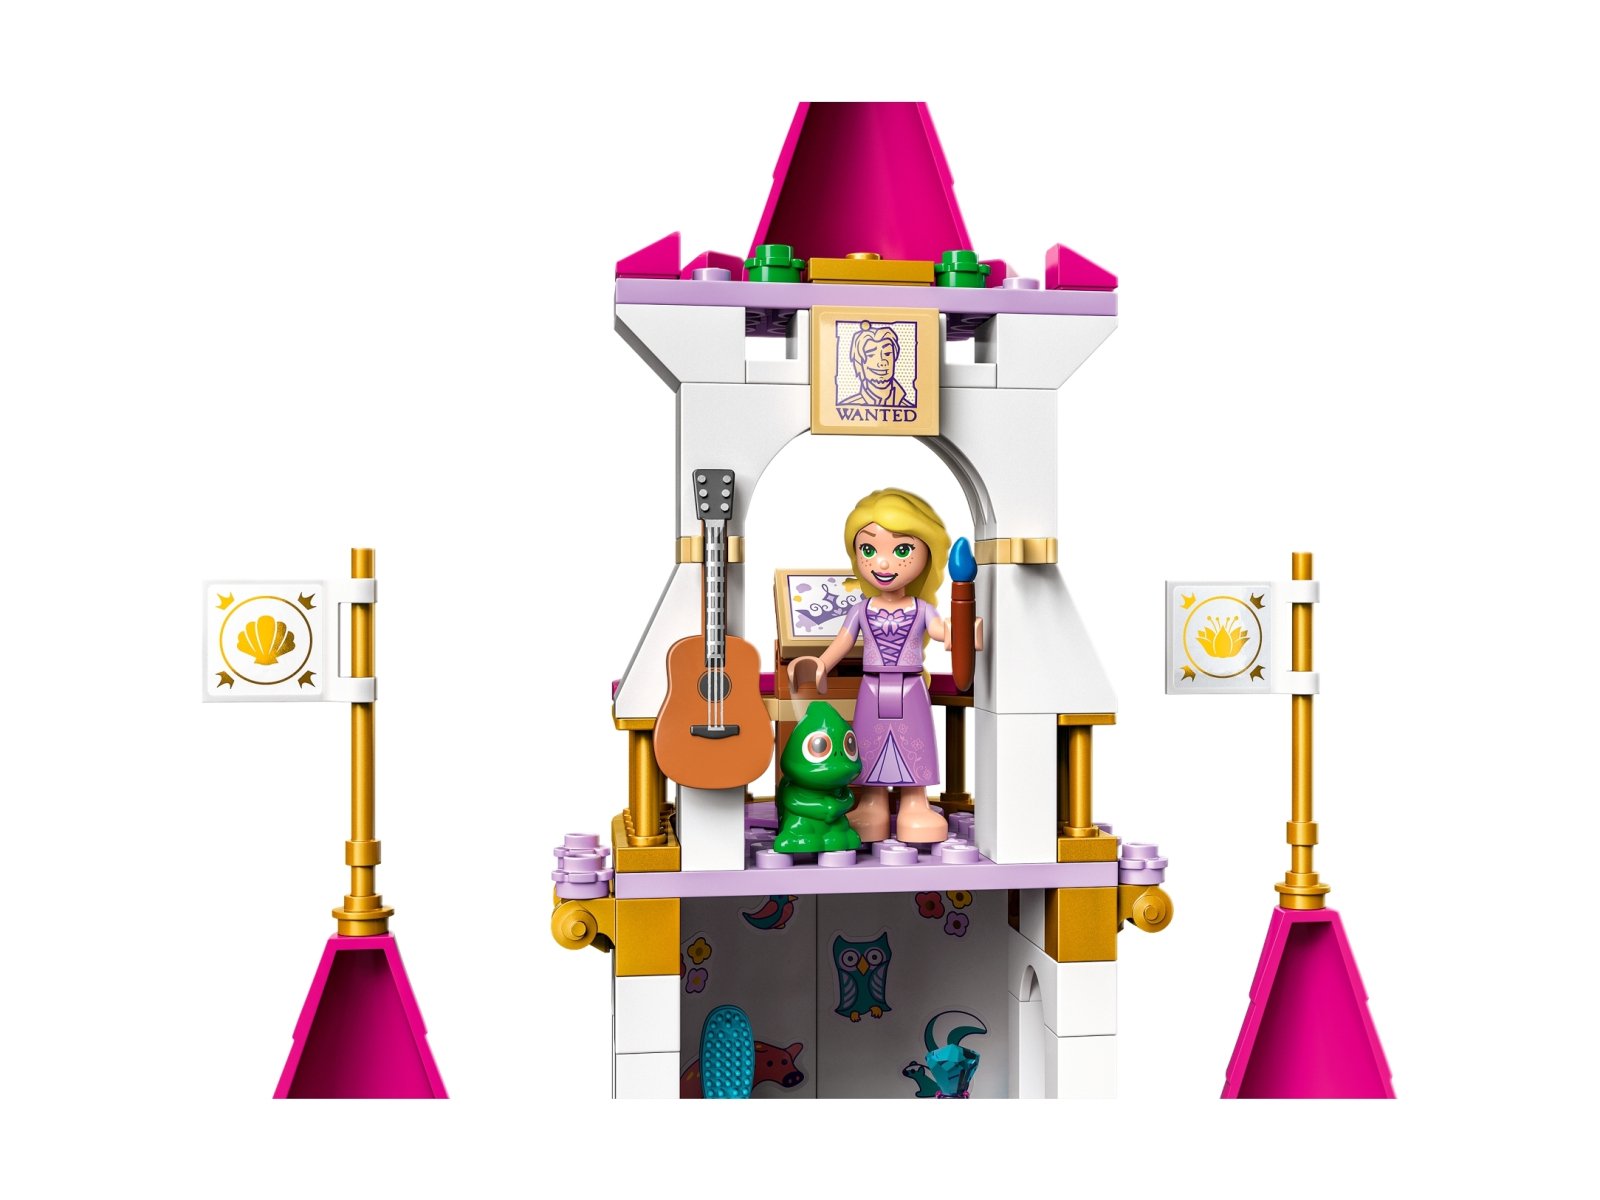 LEGO 43205 Zamek wspaniałych przygód